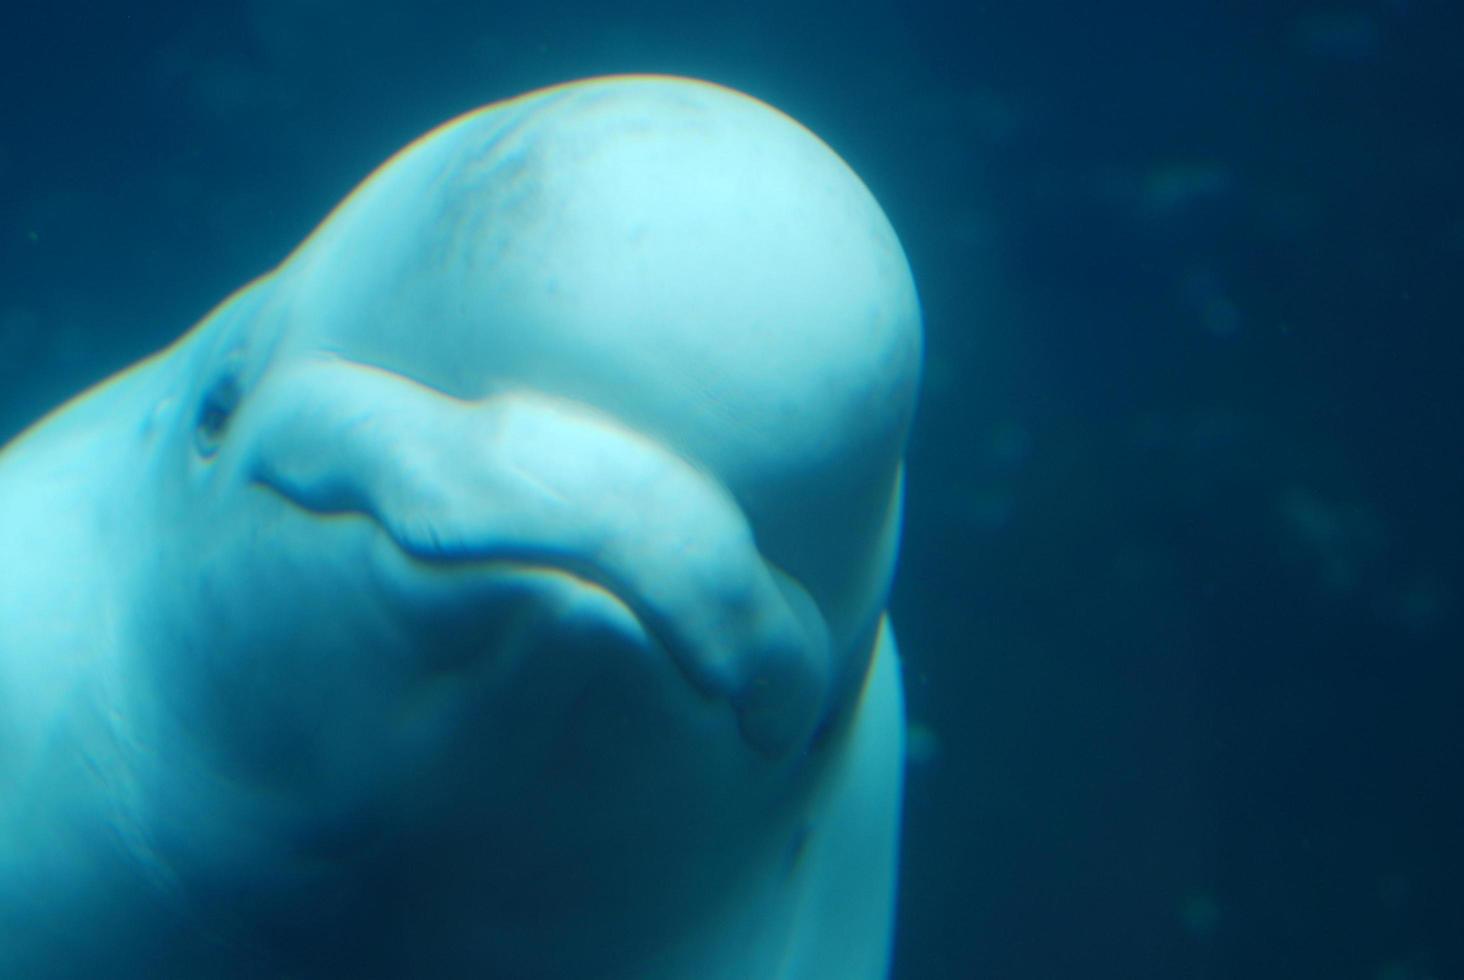 lindo rostro sonriente de una ballena blanca bajo el agua foto